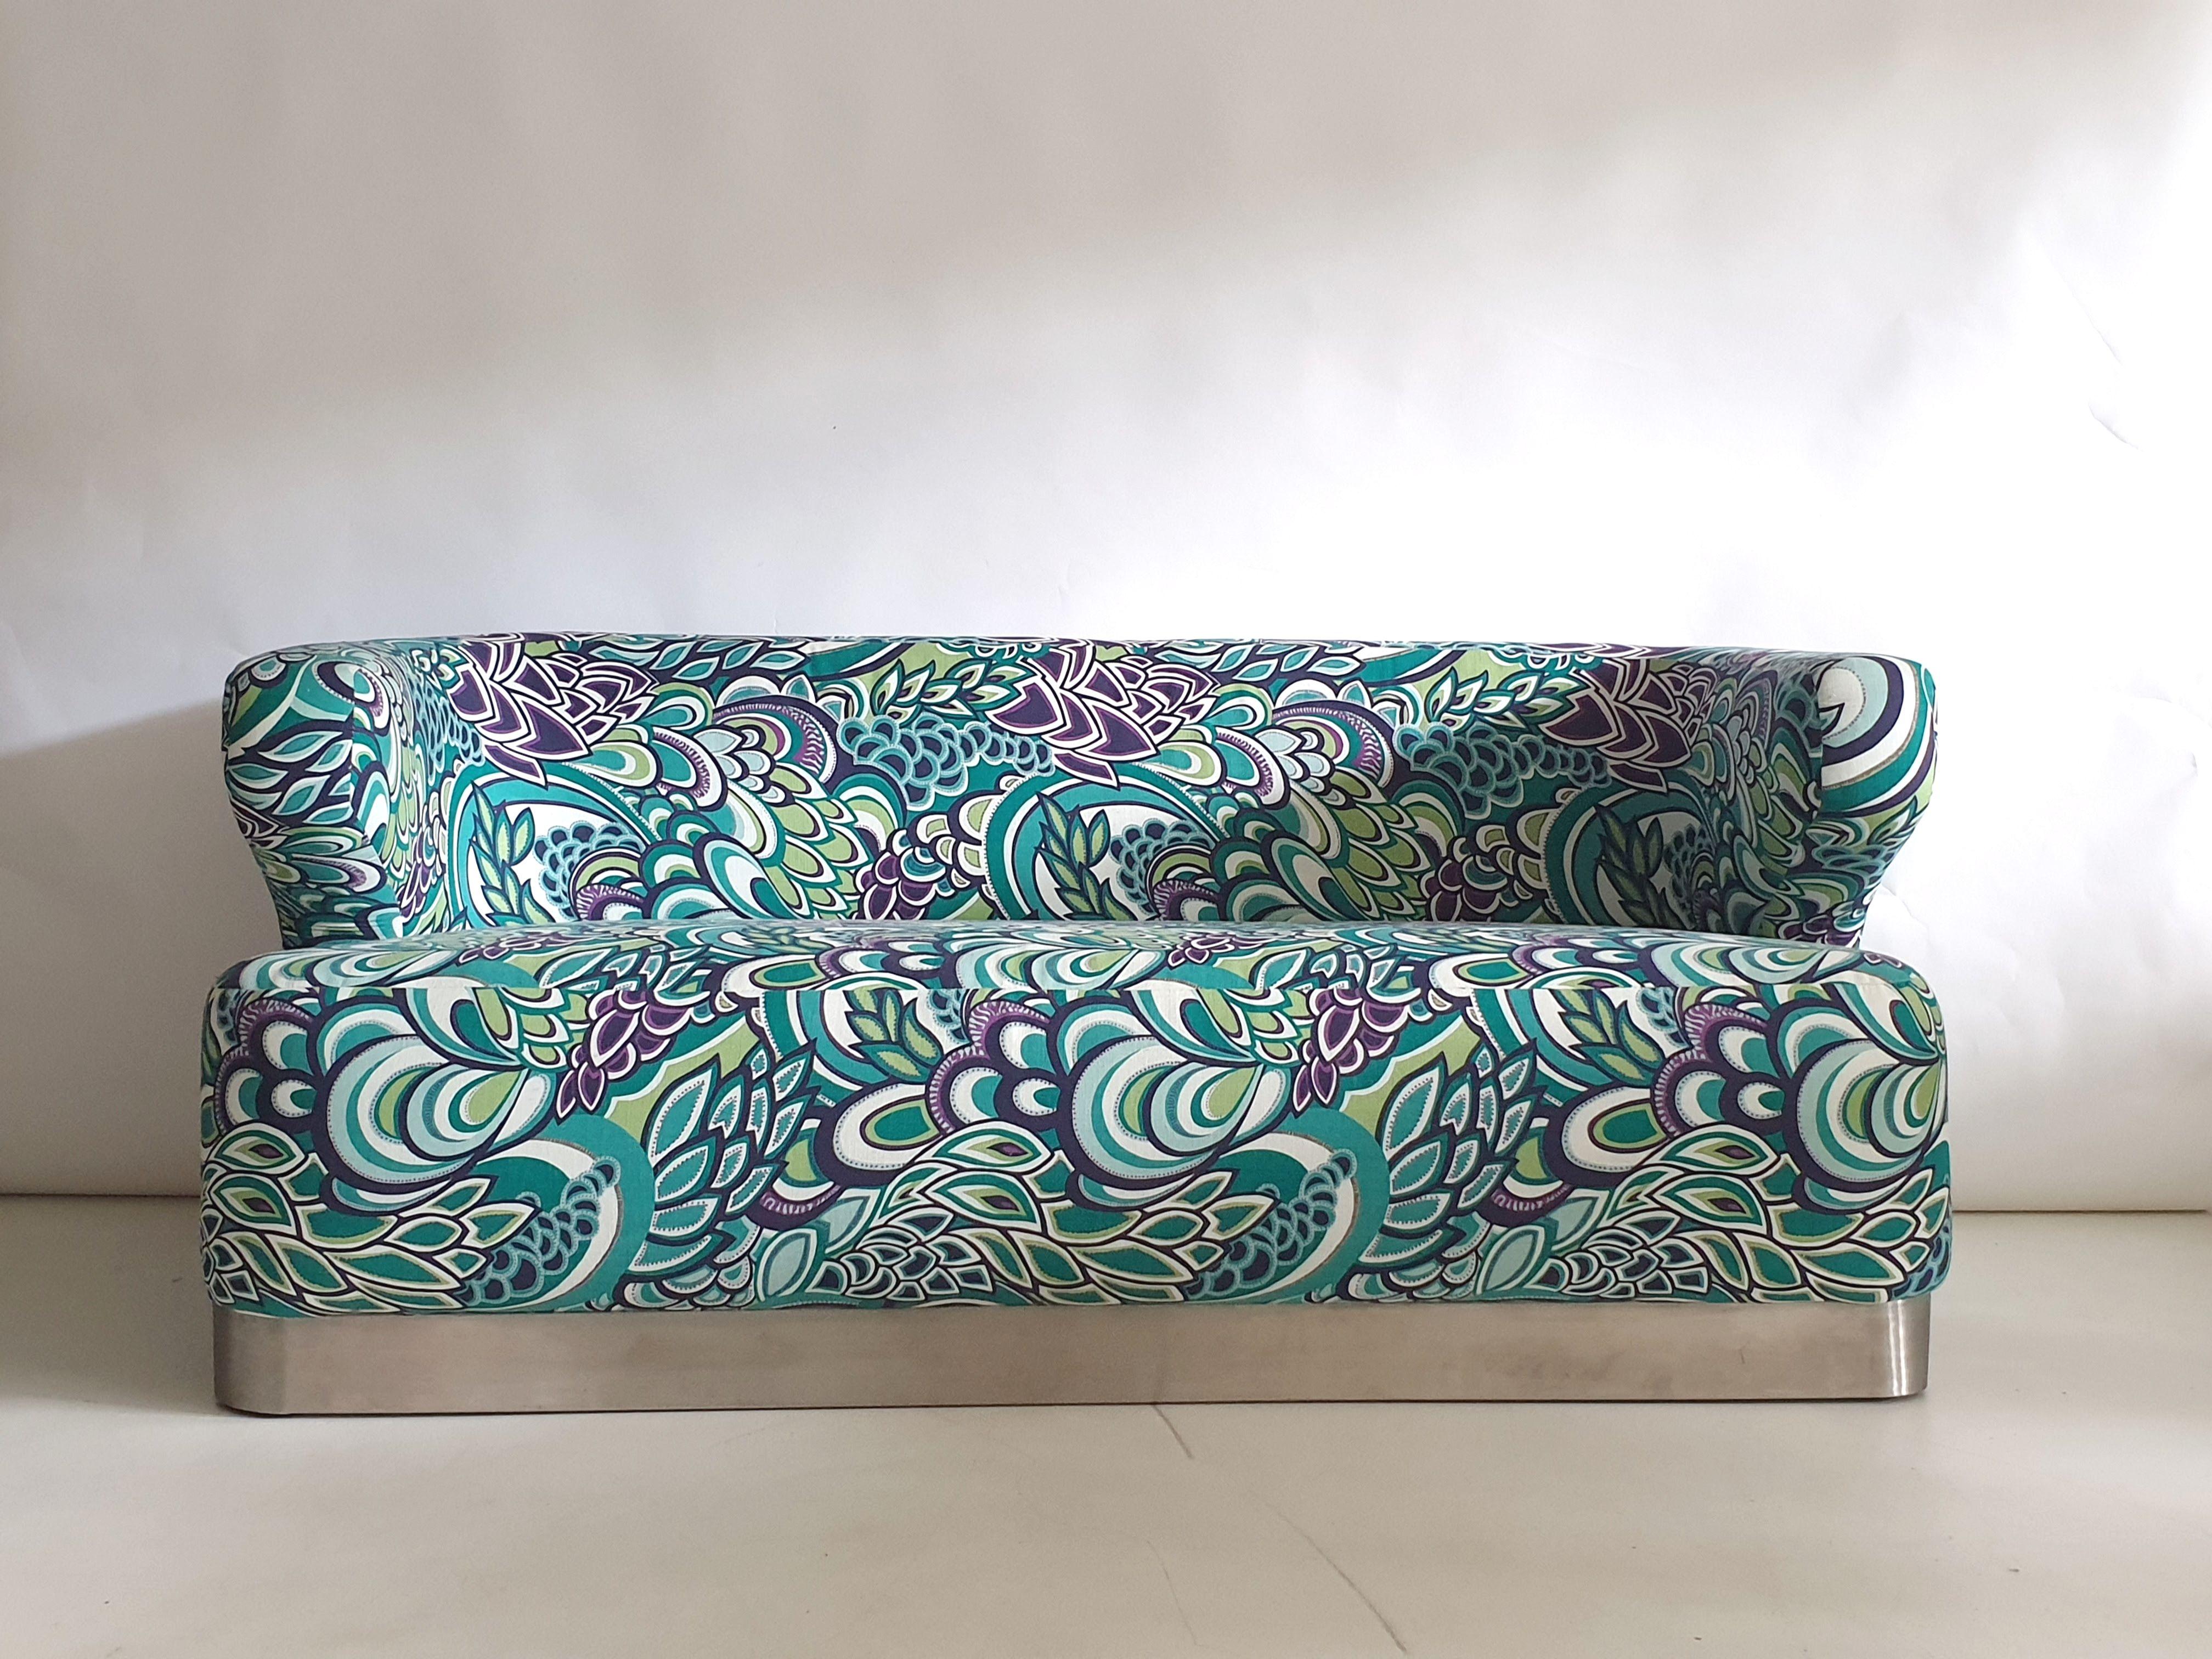 Skulpturales Sofa von Formanova mit poliertem Stahlgestell. Label auf der Rückseite. Neu gepolstert.